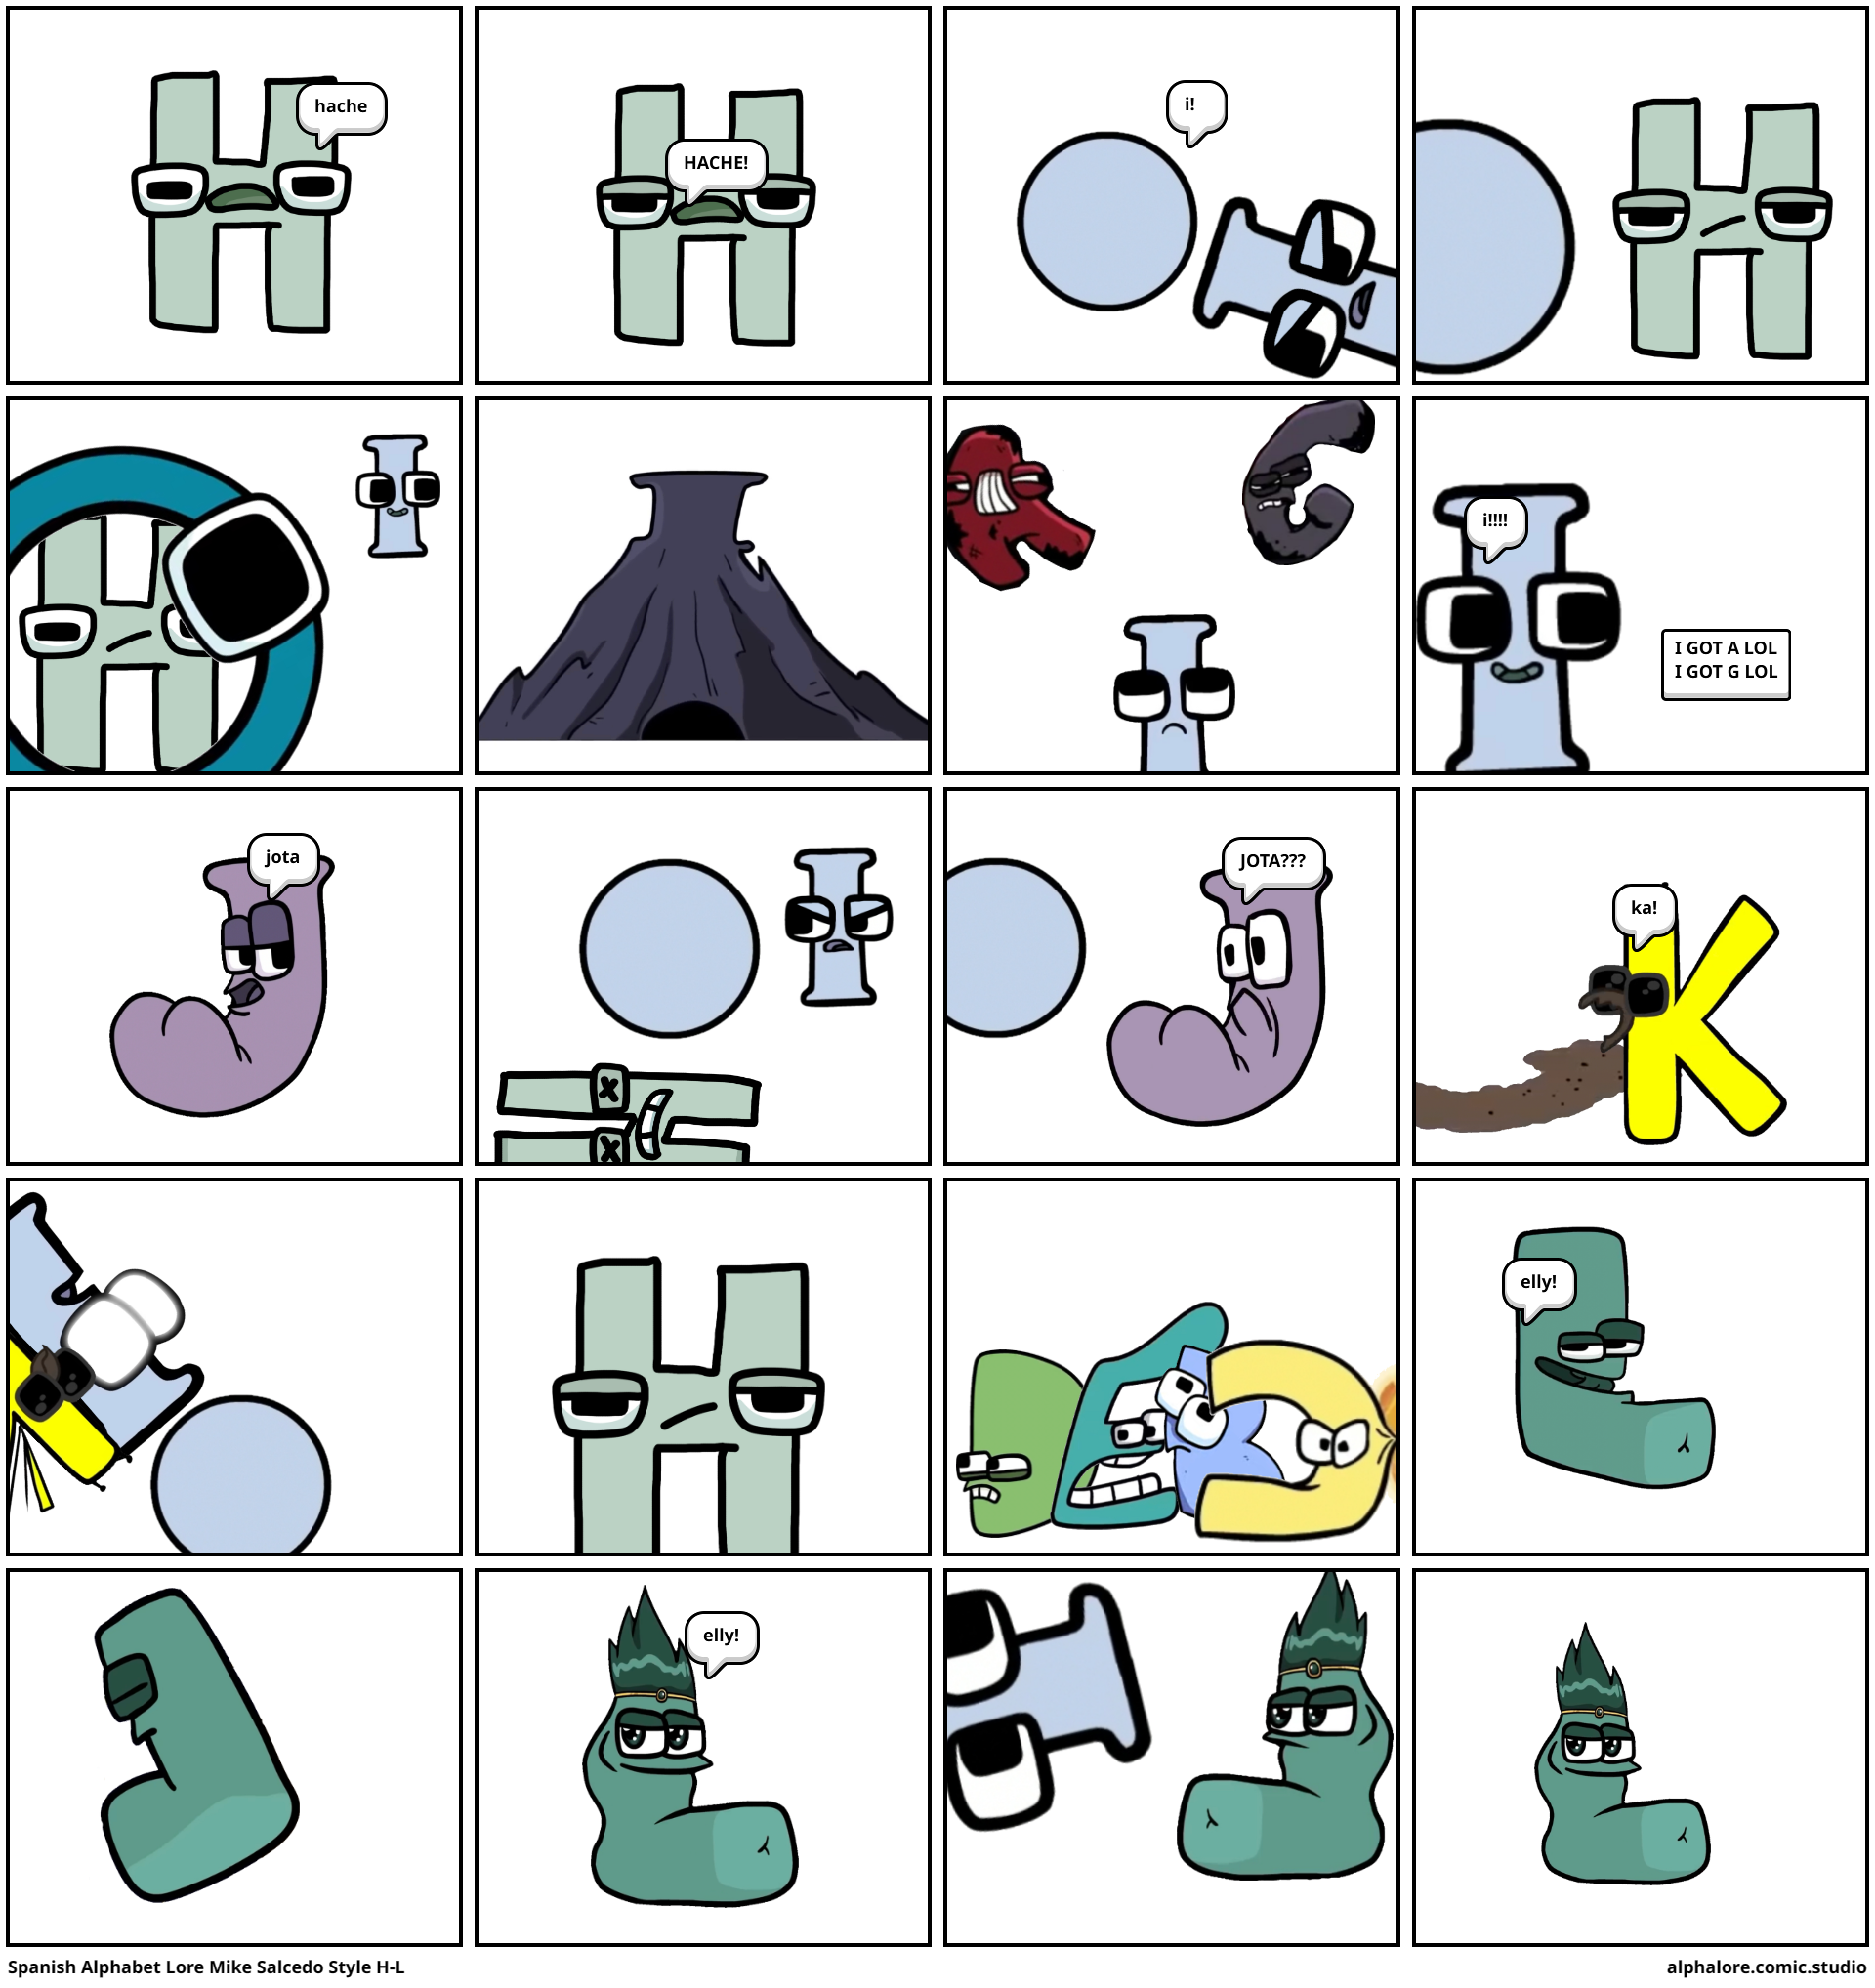 Spanish Alphabet Lore - A 3D model collection by Hache (@salhache